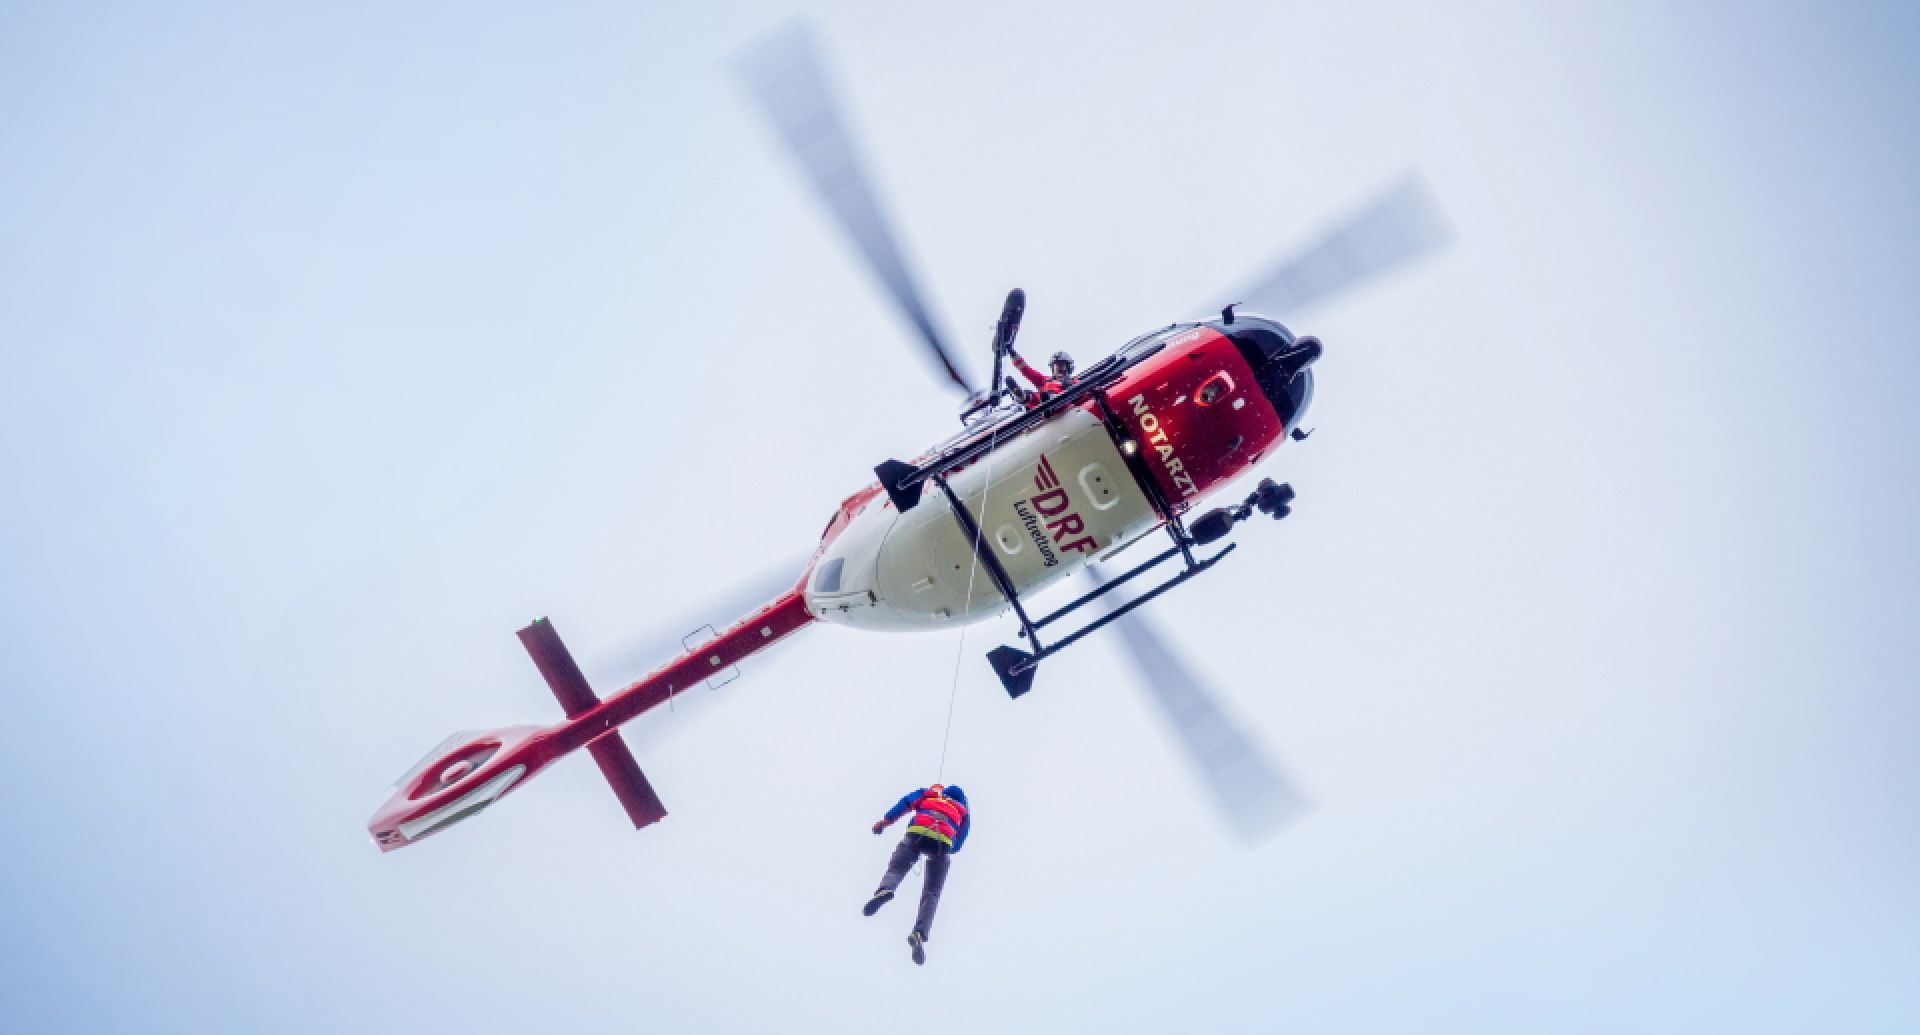 Hubschrauber des Typs H145 bei einem Windeneinsatz